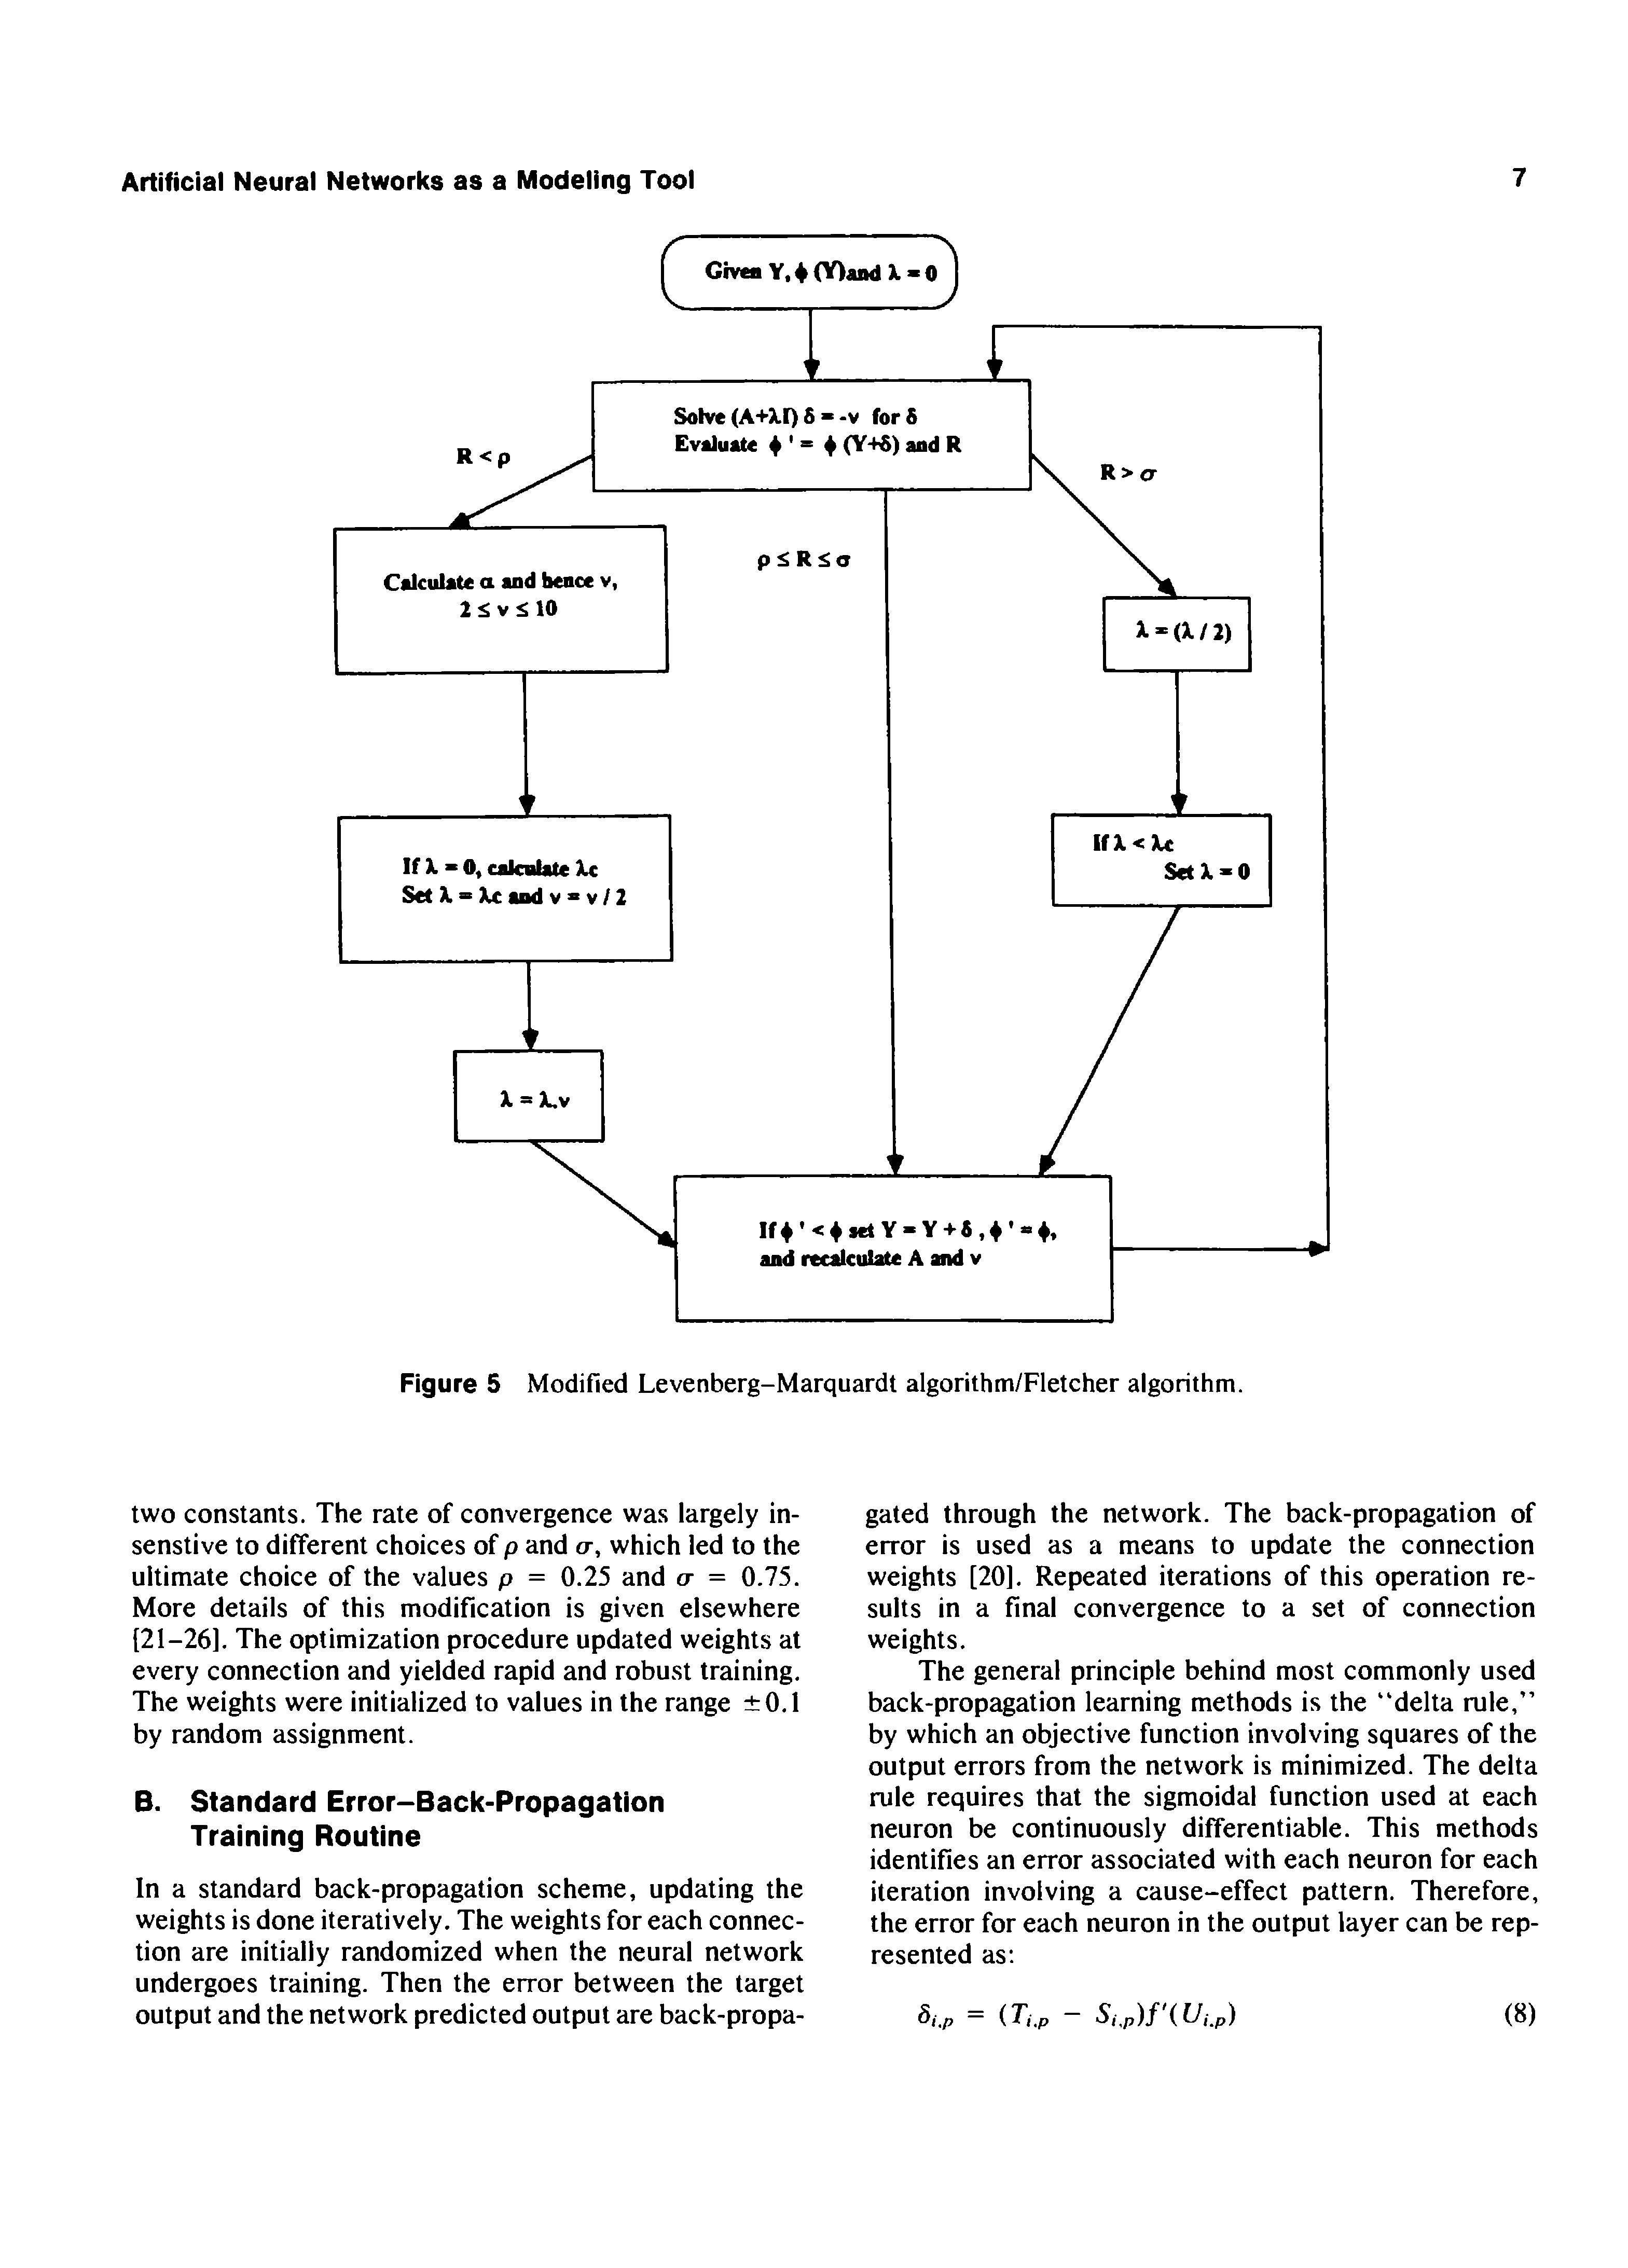 Figure 5 Modified Levenberg-Marquardt algorithm/Fletcher algorithm.